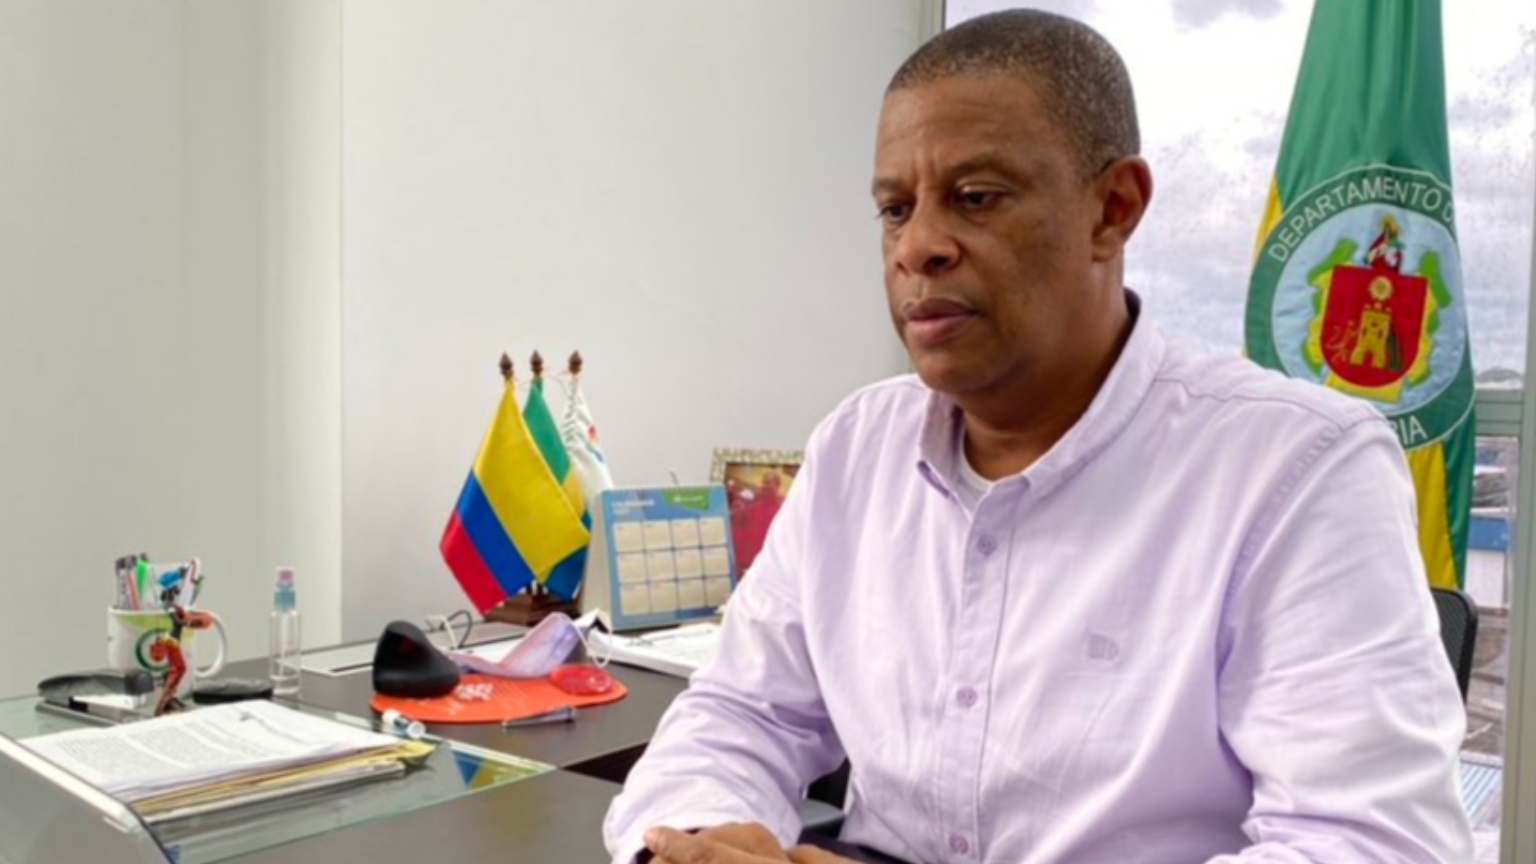 Exgobernador de Chocó volvió al cargo a pesar de estar suspendido por presunta corrupción